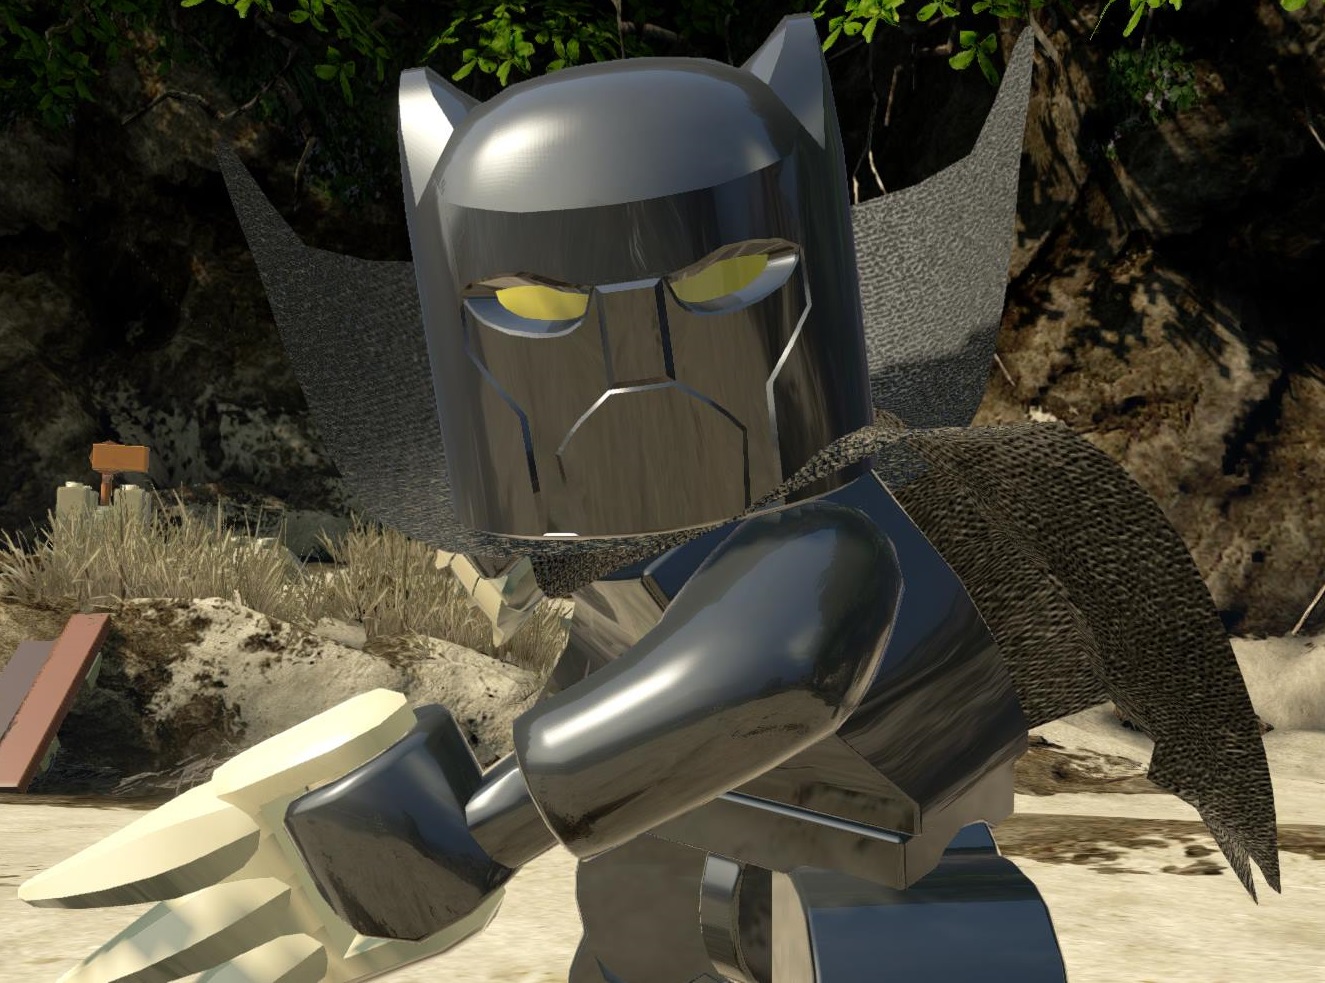 lego marvel super heroes black panther